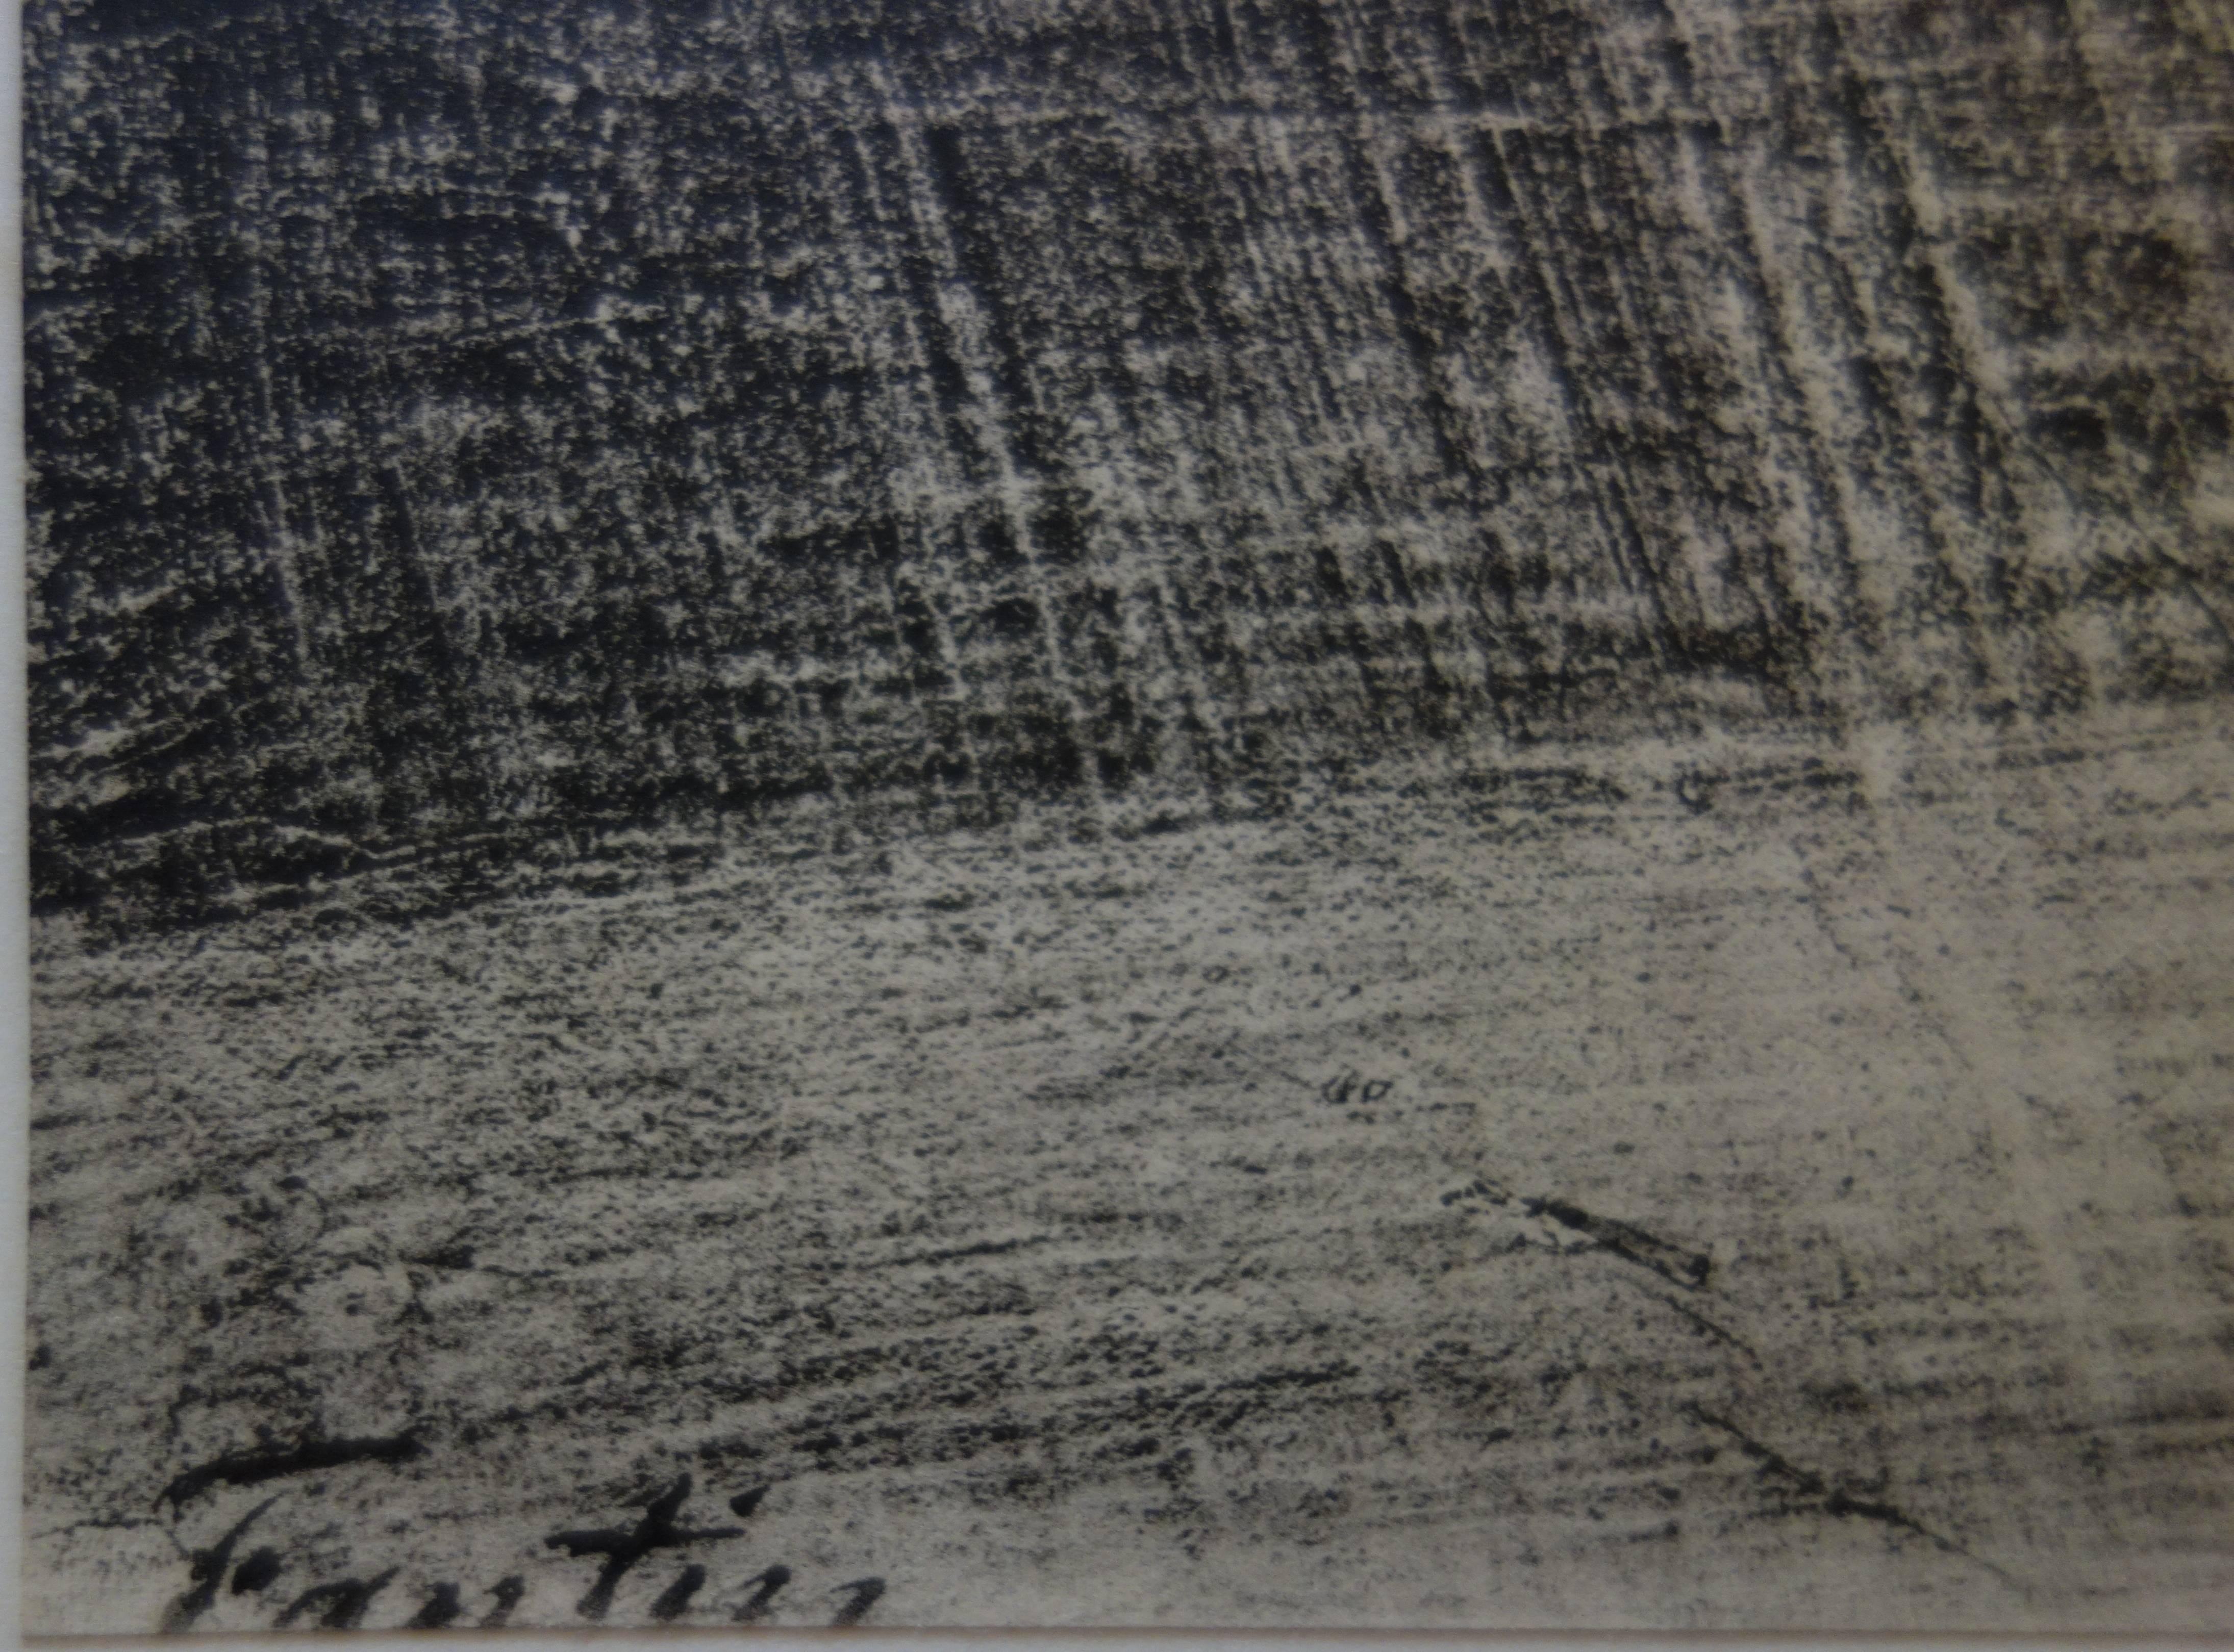 Henri Fantin-Latour
Immortalité 

Lithographie originale
Signature imprimée dans la plaque
1897/98
Imprimé sur papier Vélin 
Taille 40 x 31 cm (c. 16 x 12in)

INFORMATION : Publié par 'Estampe Moderne, Paris, 1897-1899 et imprimé par l'Imprimerie